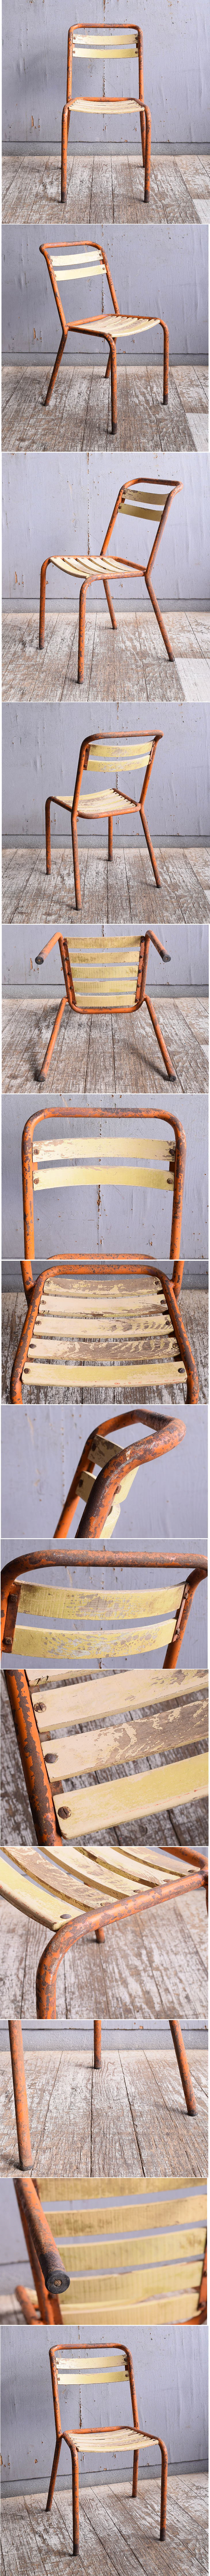 フレンチ アンティーク スタッキング ガーデンチェア 椅子 11552